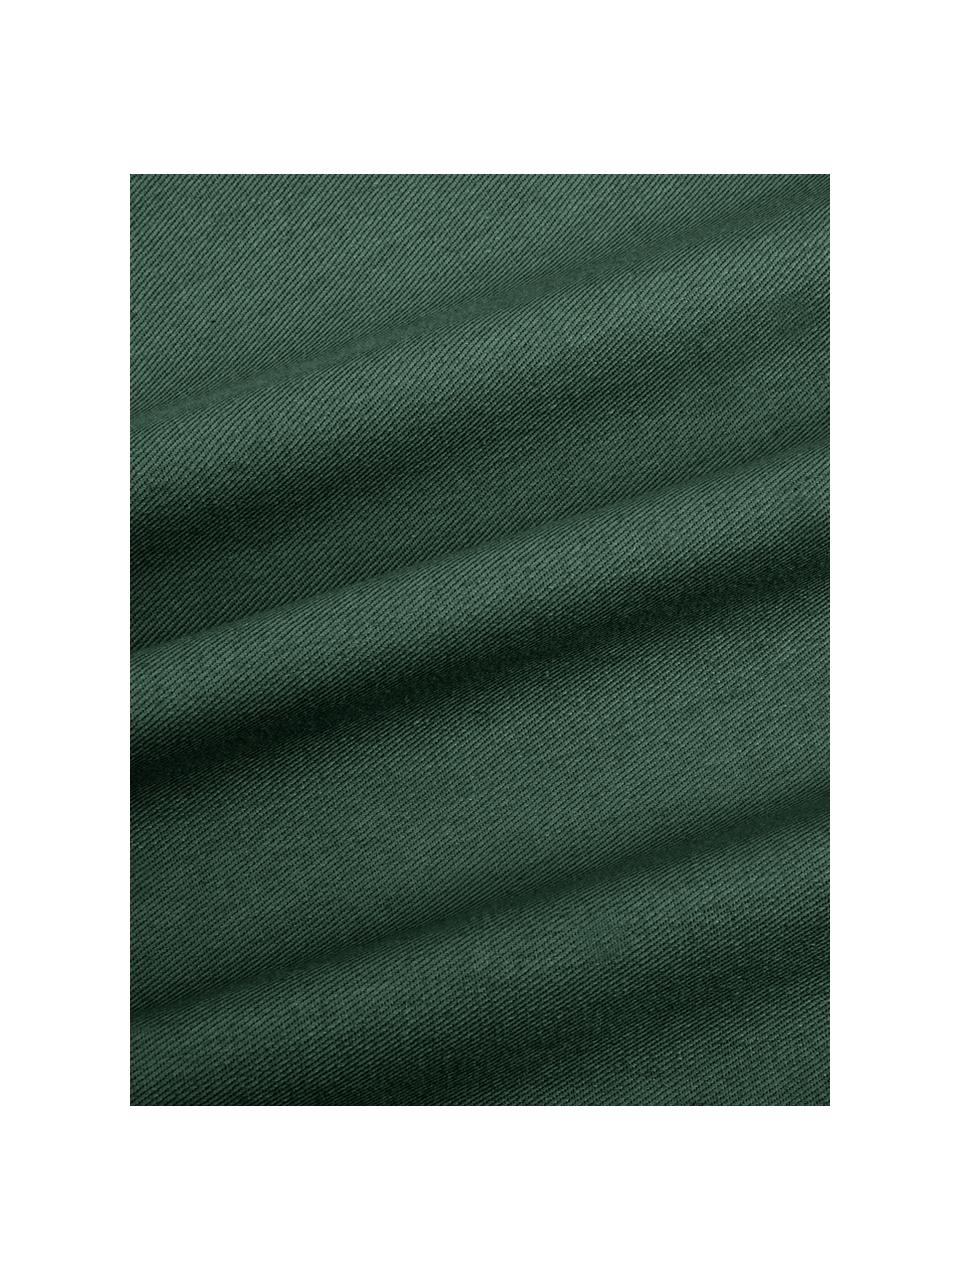 Katoenen kussenhoes Mads in groen, 100% katoen, Groen, 40 x 40 cm